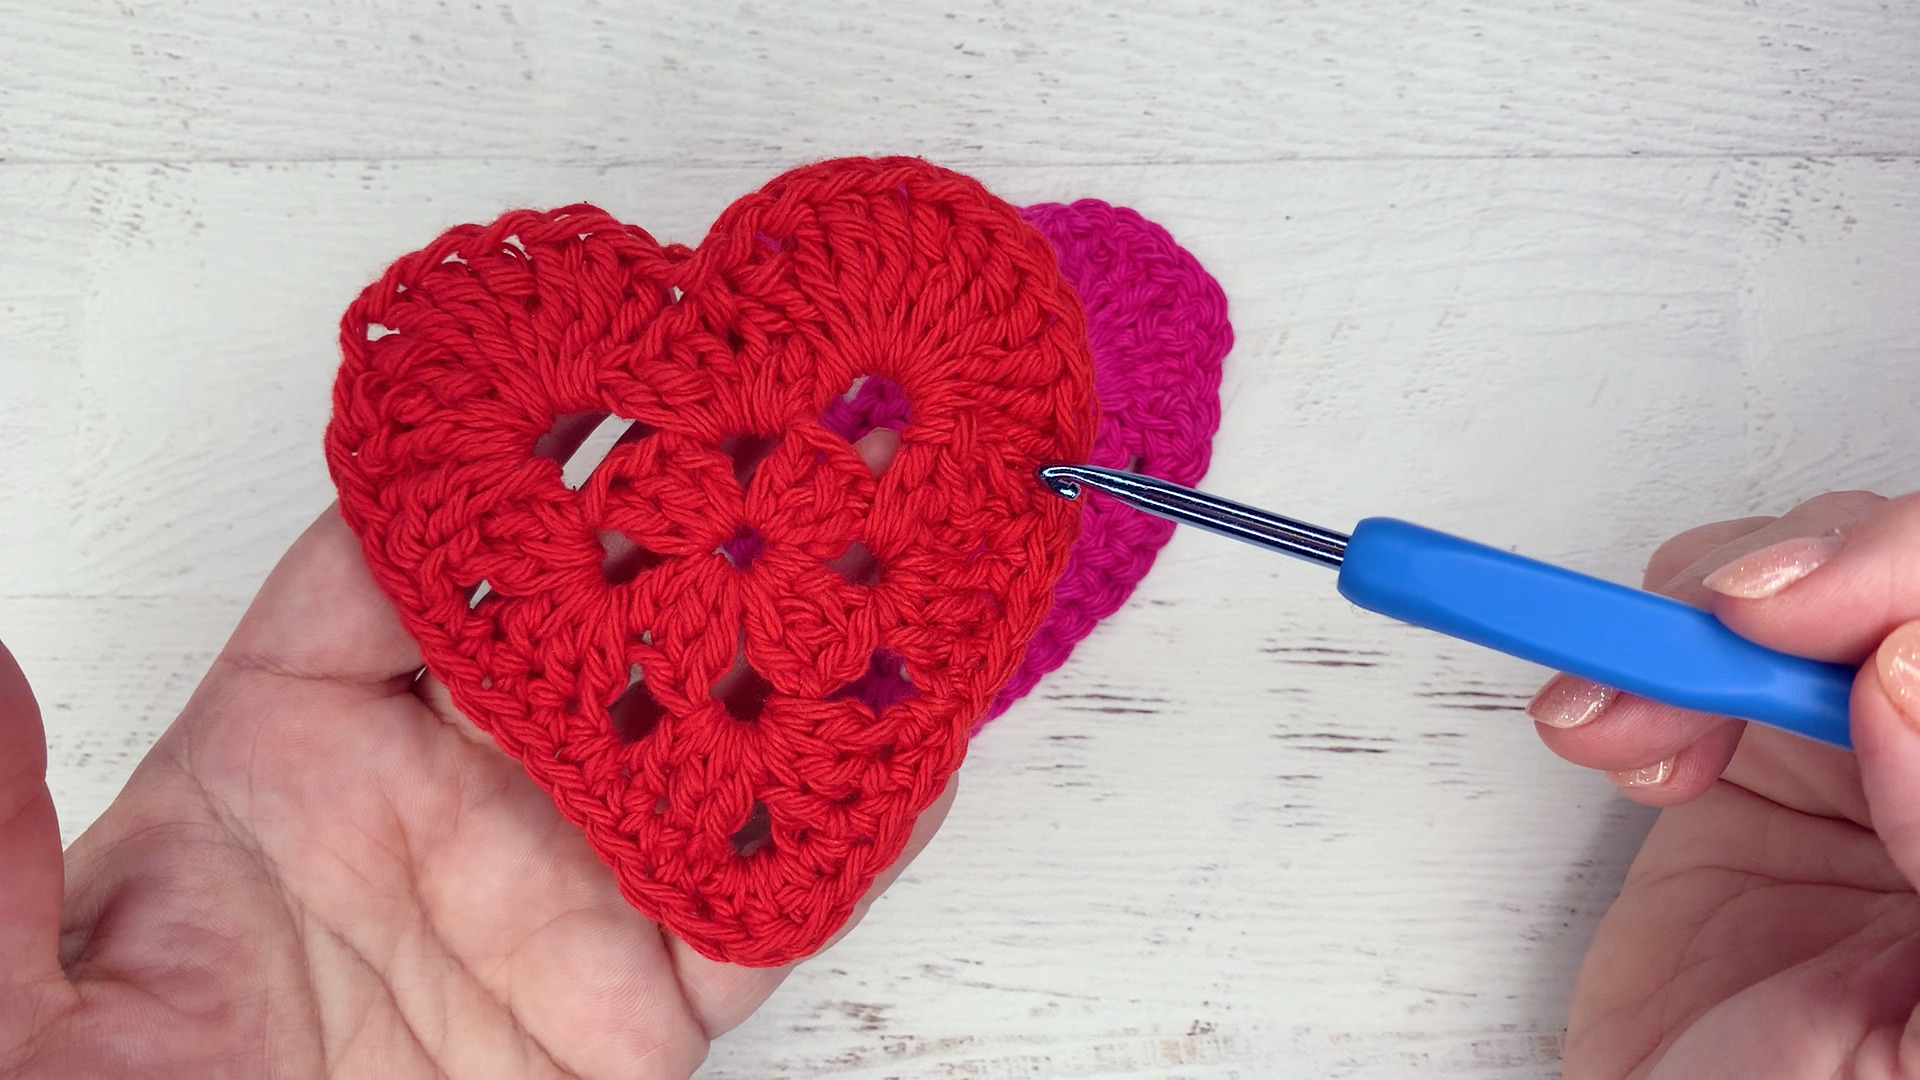 CROCHET PATTERN: Crochet Heart Book Sleeve Pattern, Crochet Heart Pattern,  Book Sleeve Crochet Pattern, Book Cover Crochet Pattern - Crochet Patterns